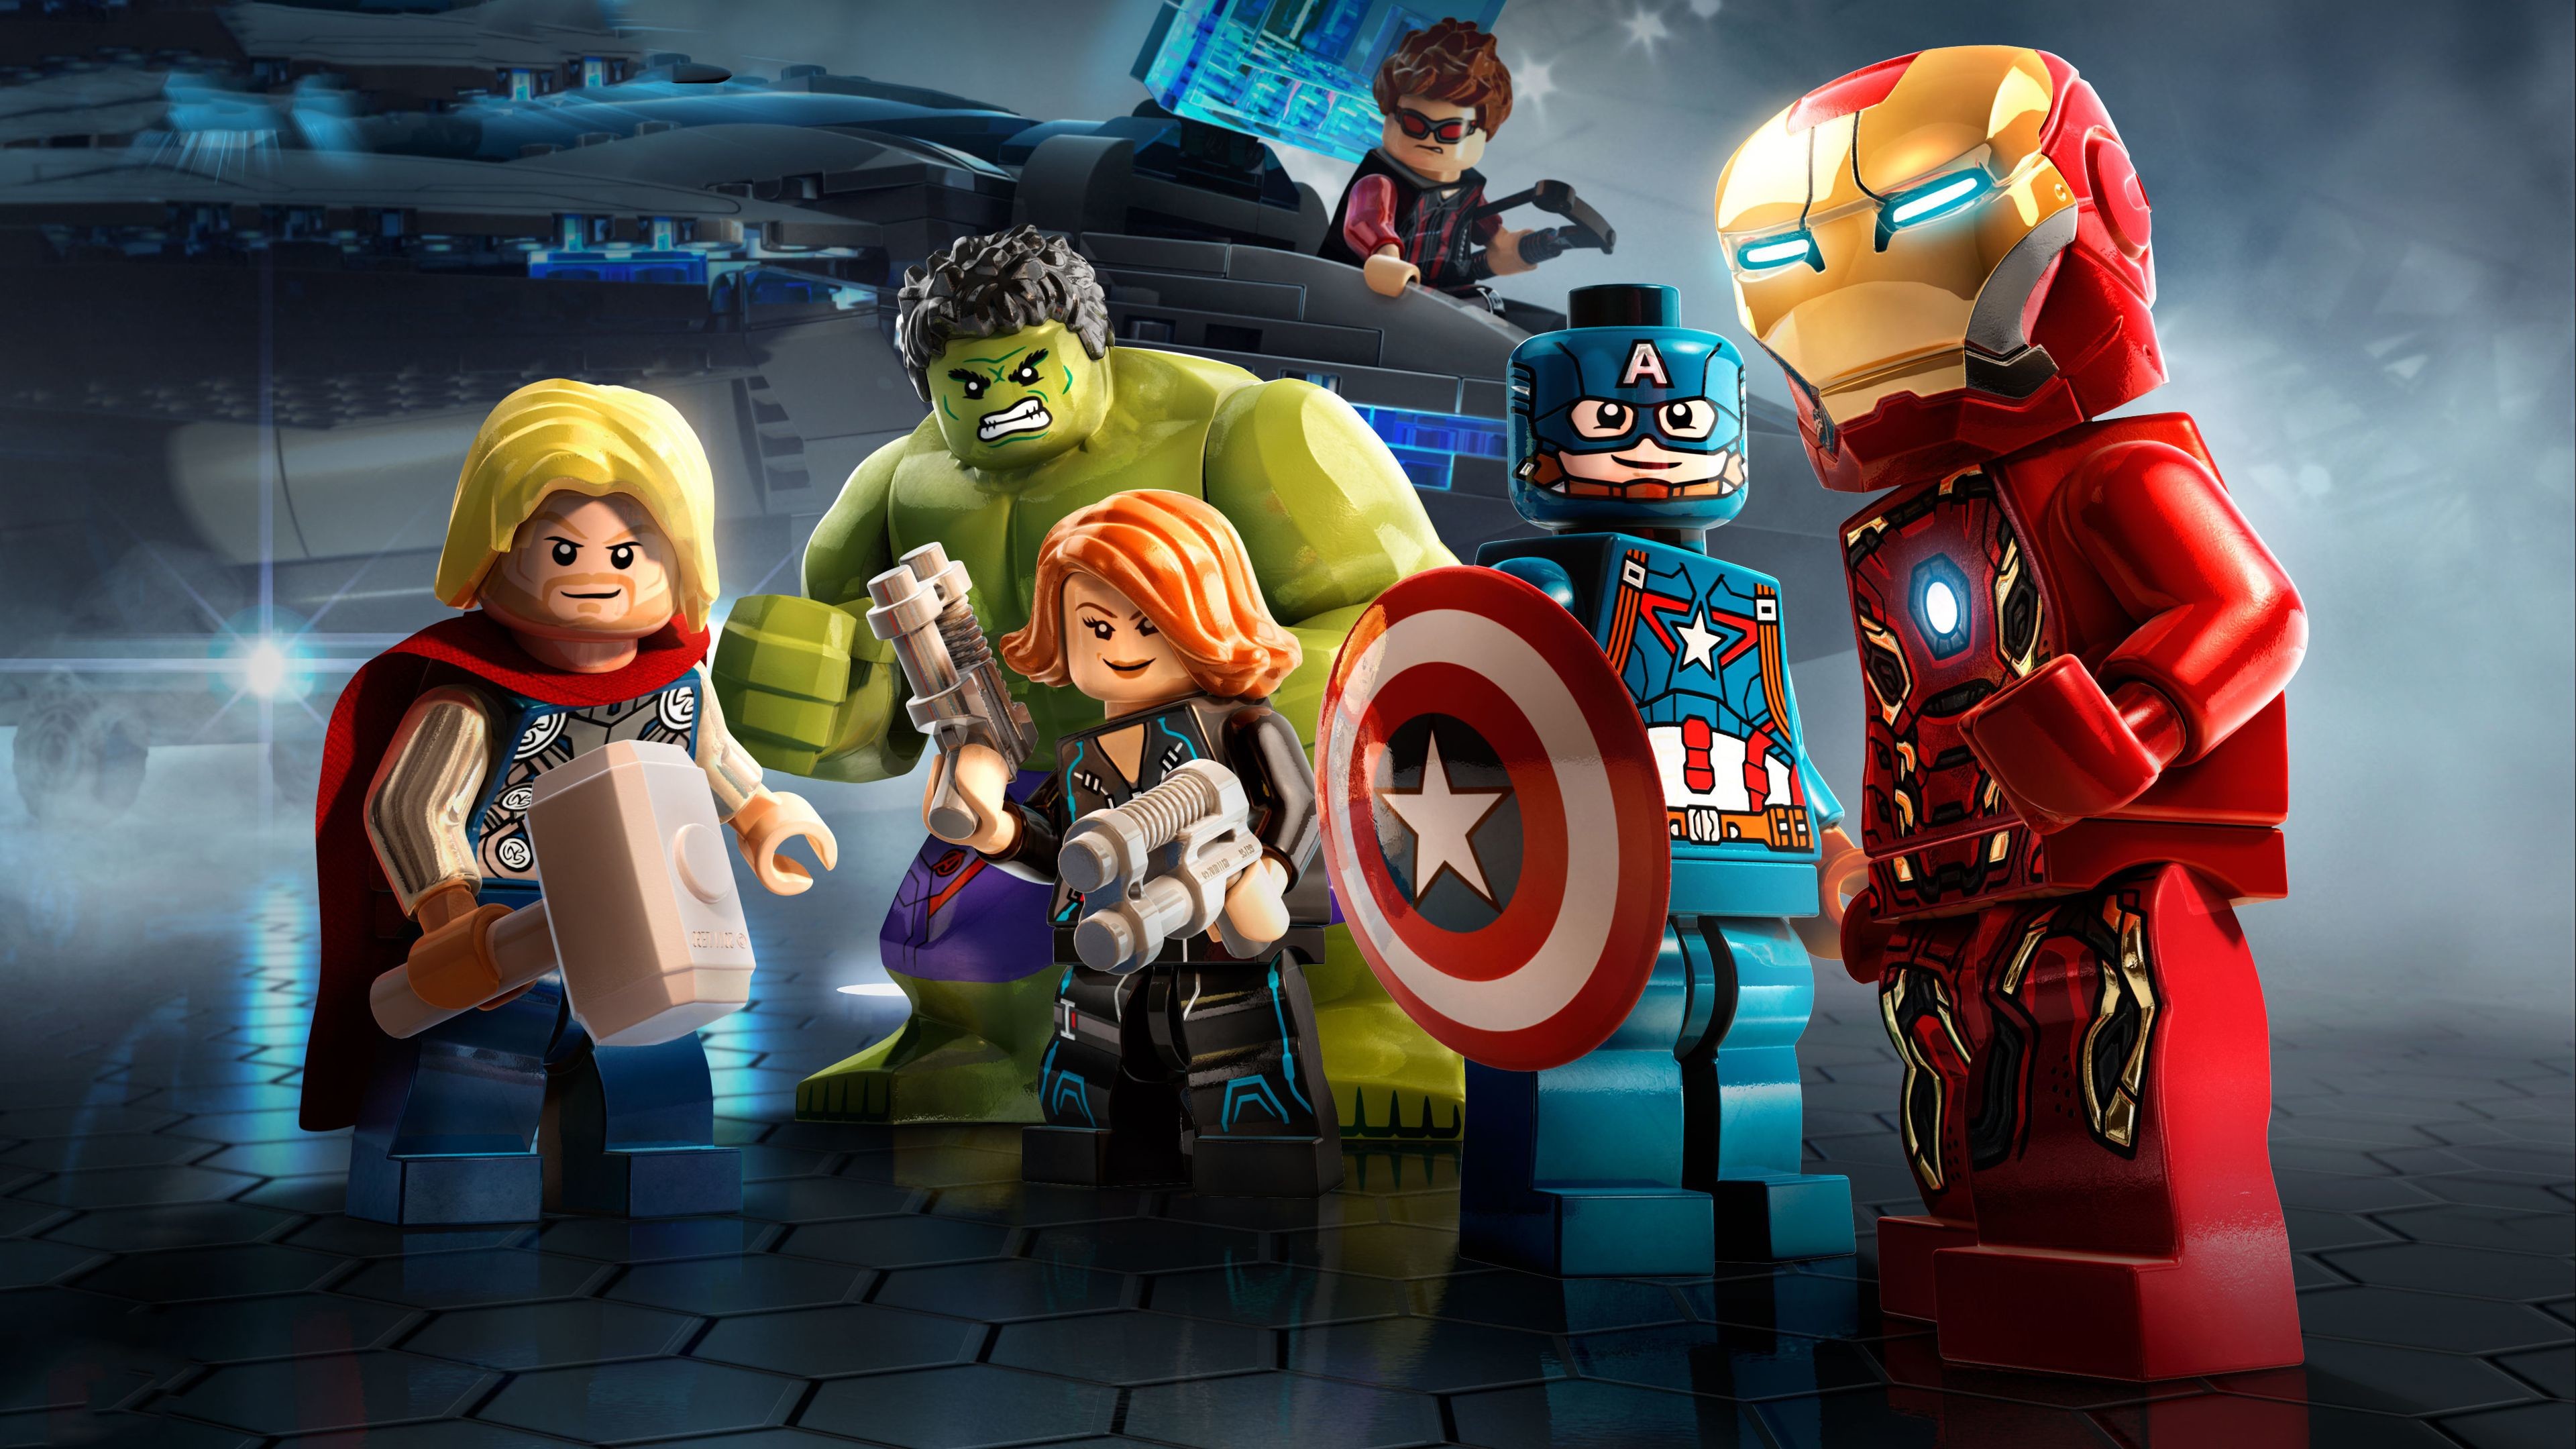 3840x2160 Marvel Avengers Lego 4k superheroes wallpapers, lego wallpapers, hd- wallpapers, avengers-wallpapers, 4k-wallpapers